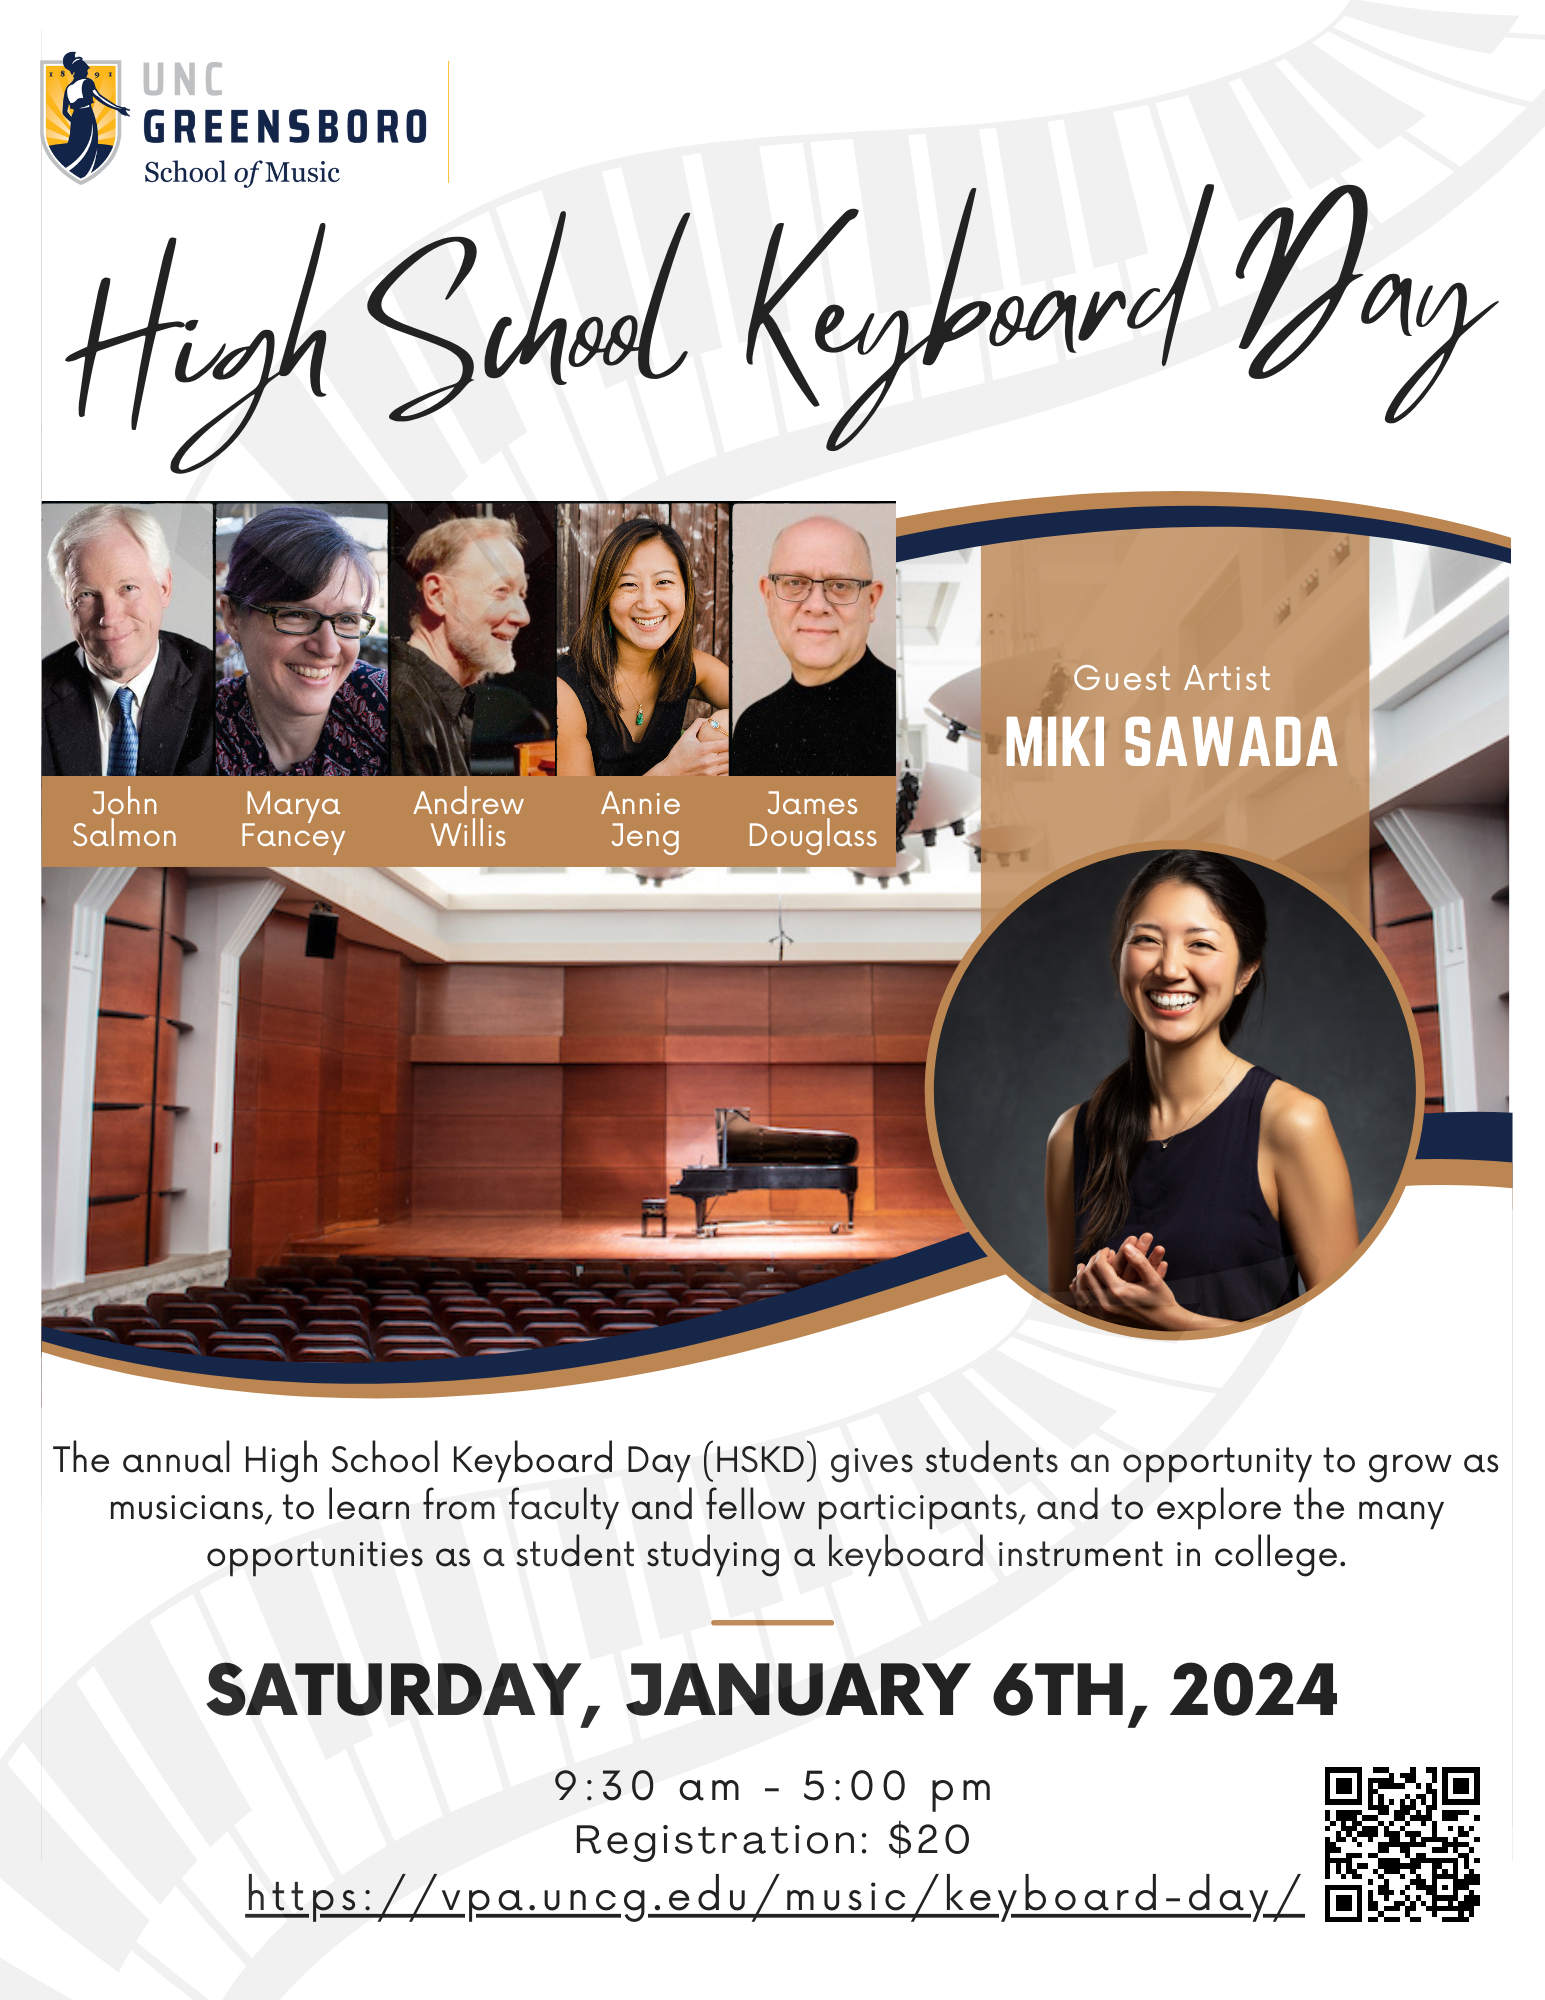 High School Keyboard Day 2023